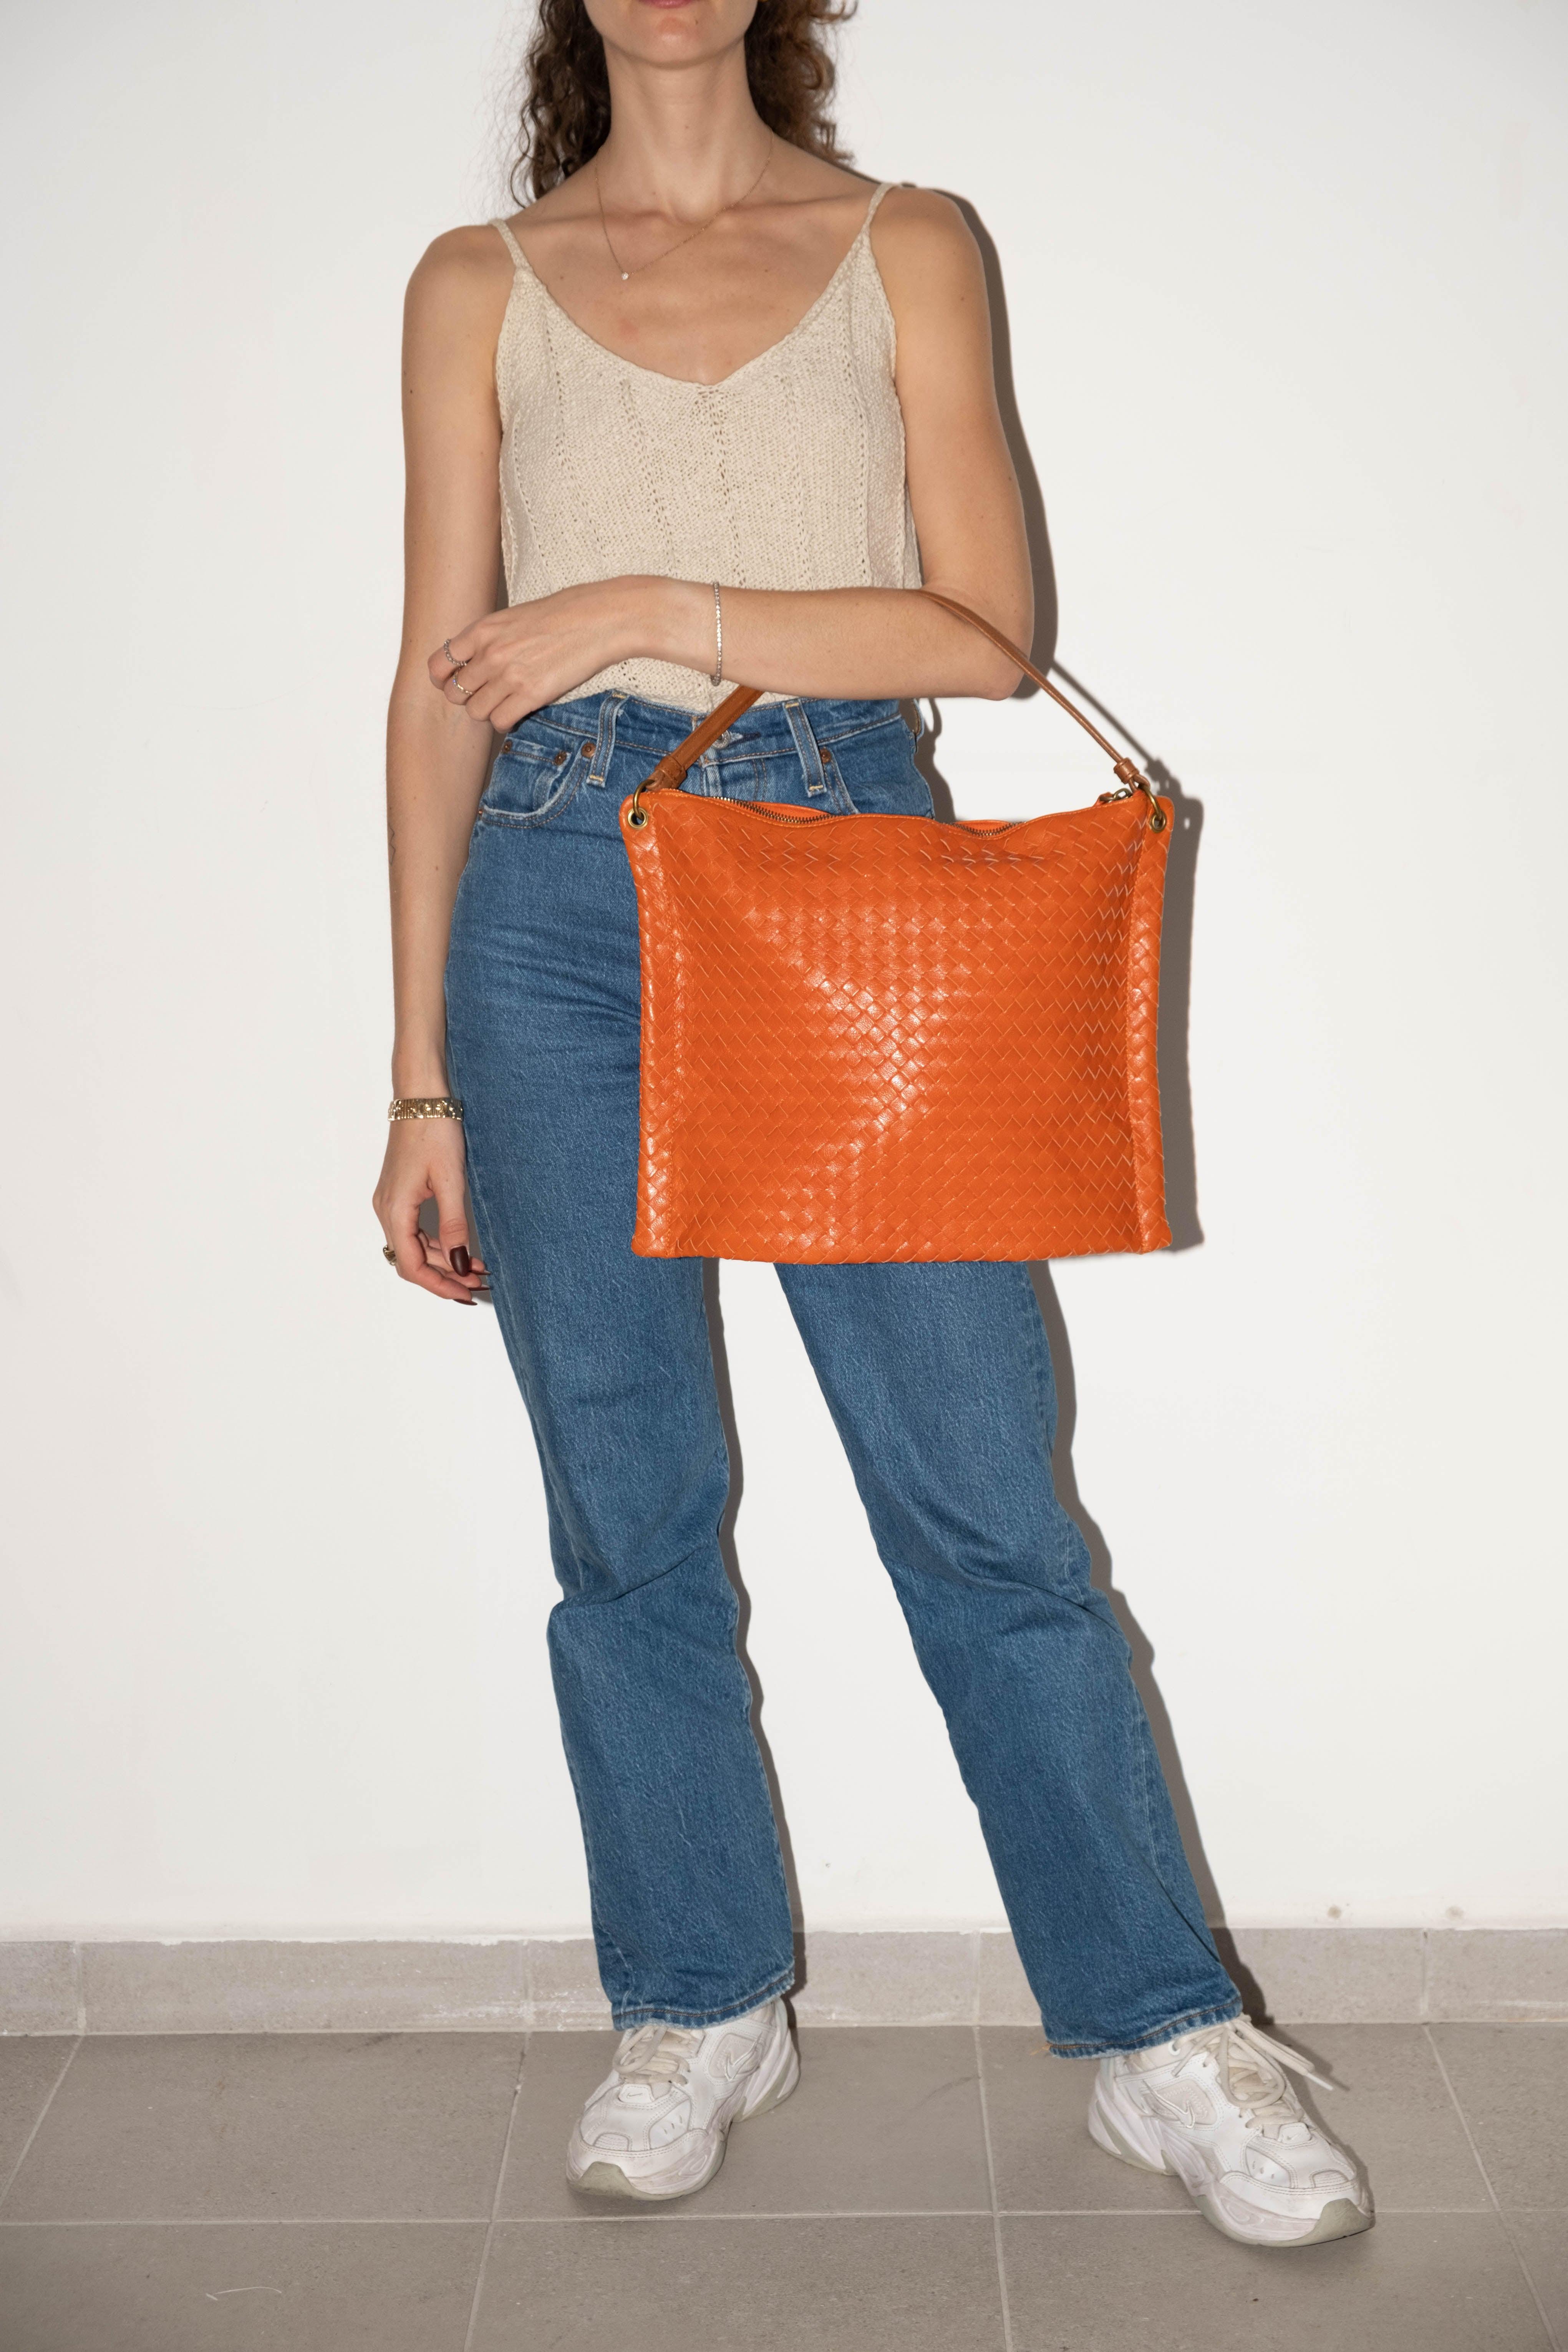 Intrecciato Shoulder Bag Orange - Volver